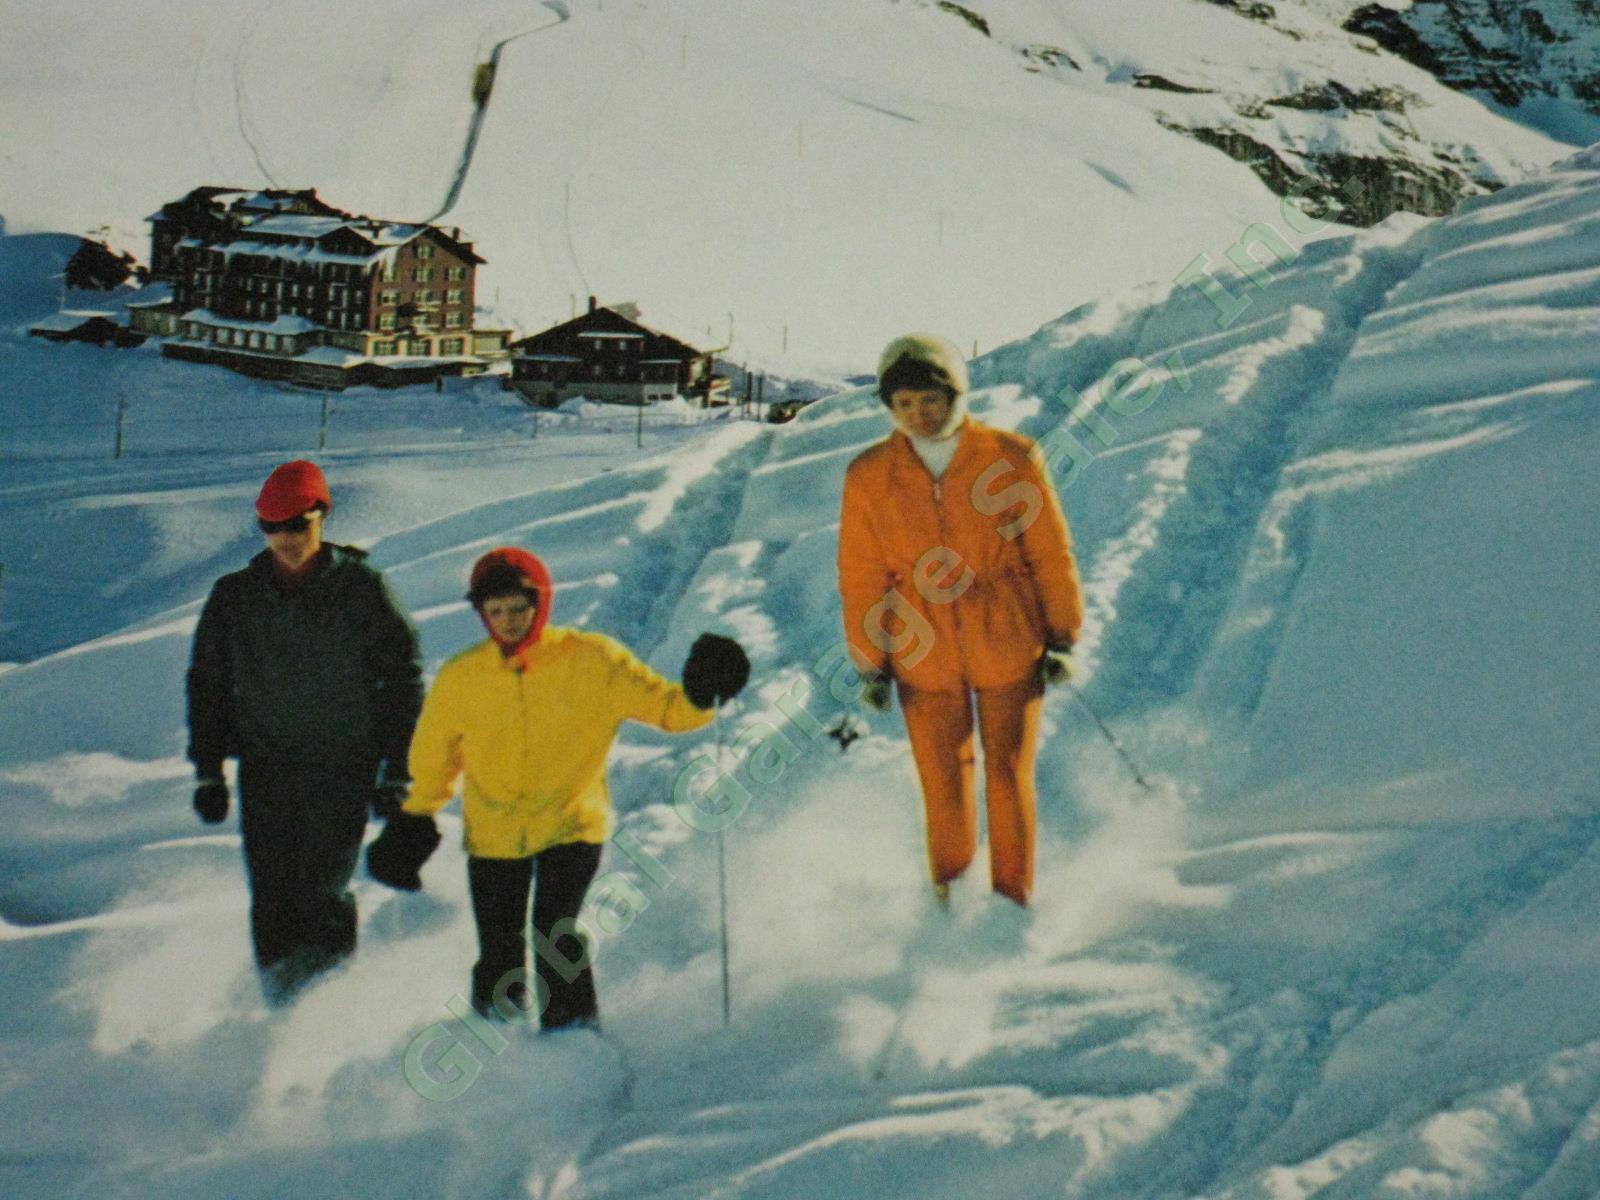 Vtg 50s Travel Ski Poster Kleine Scheidegg Jungfrau Berner Oberland Switzerland 3